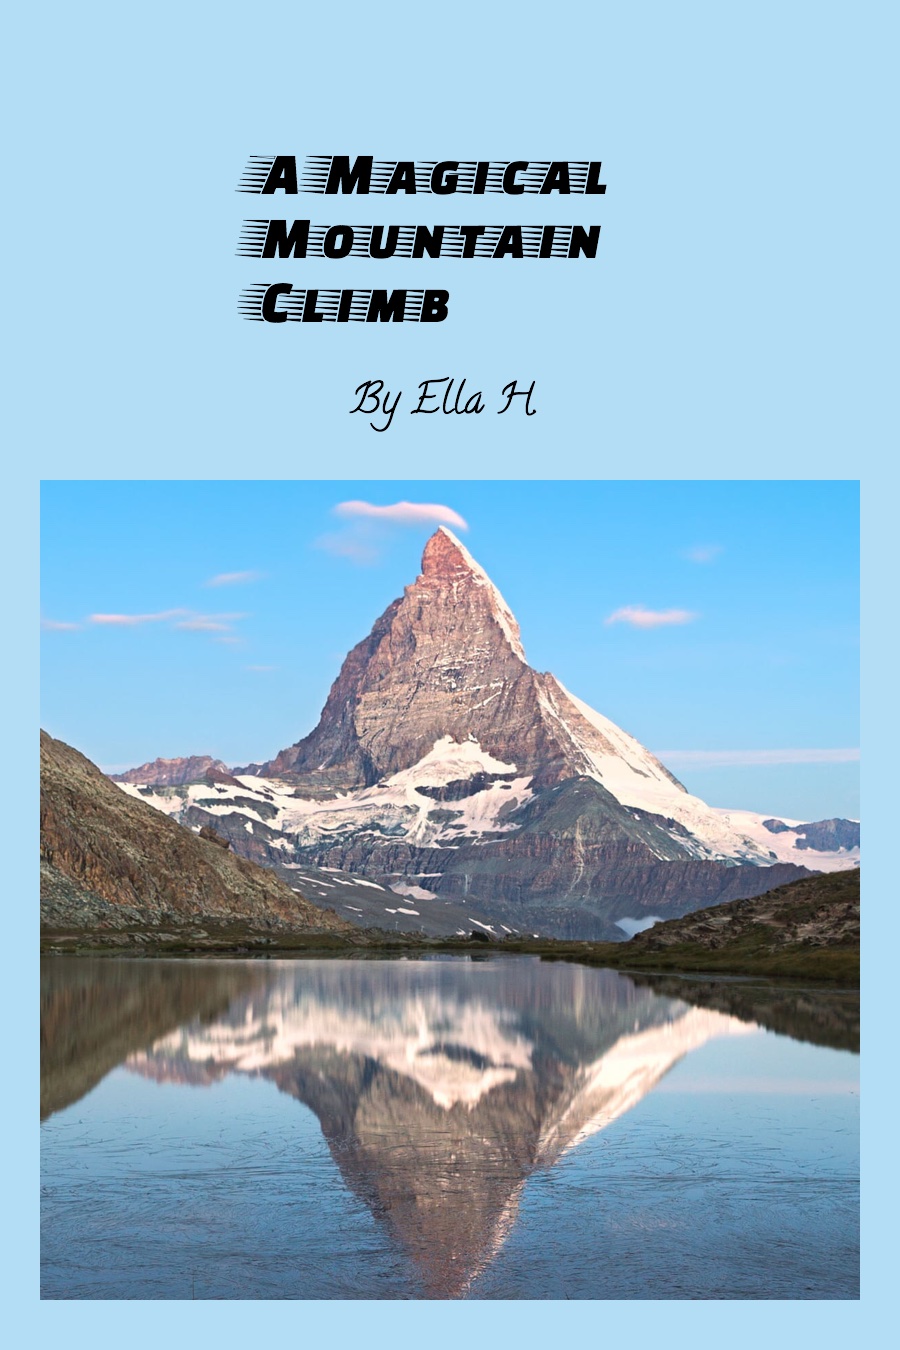 A Magical Mountain Climb by Ella H